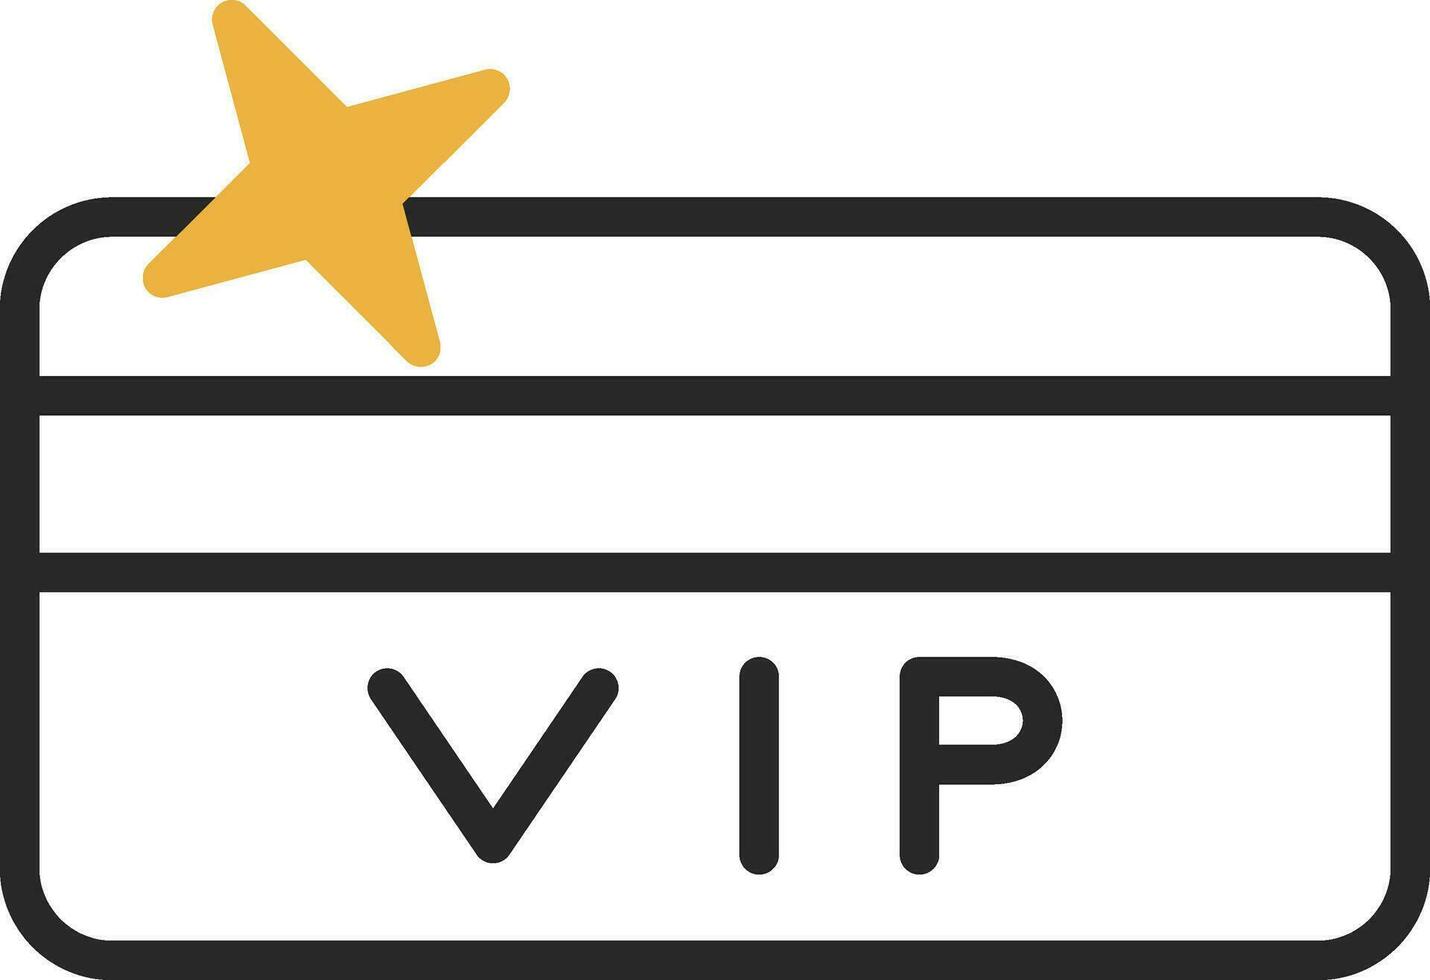 diseño de icono de vector de tarjeta vip